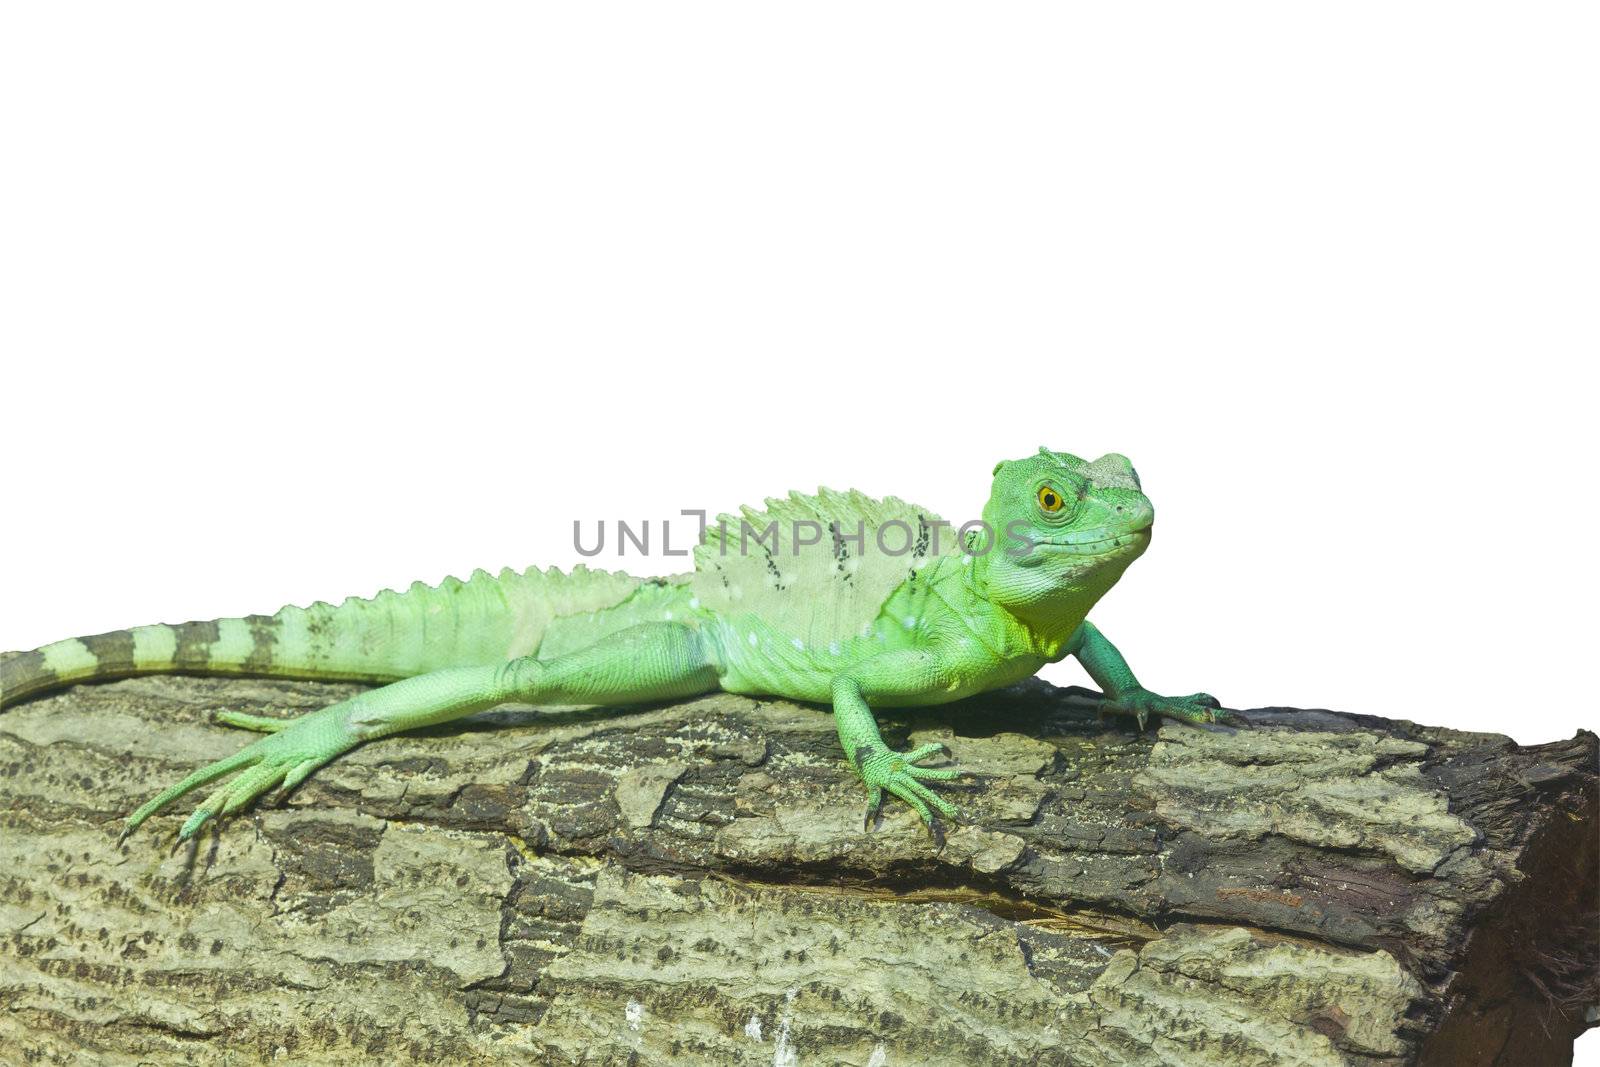 little lizard on a stick  by FrameAngel